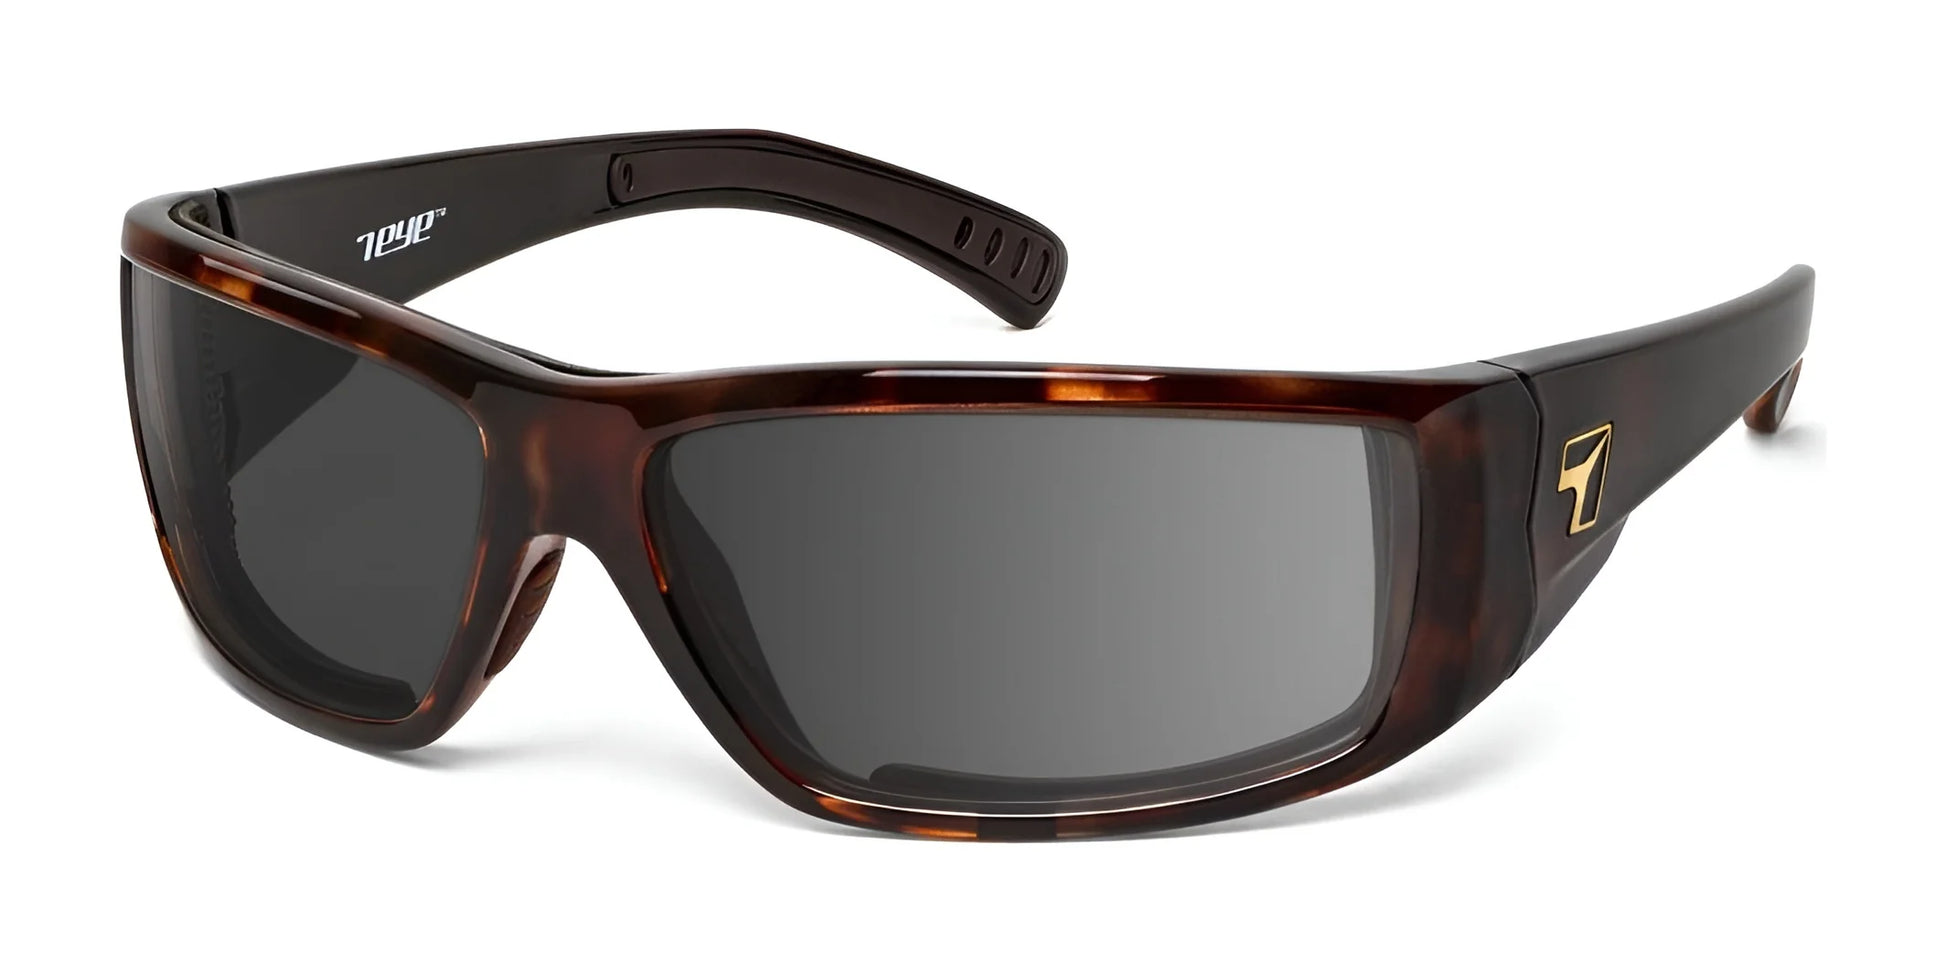 7eye Maestro Sunglasses Tortoise / Gray